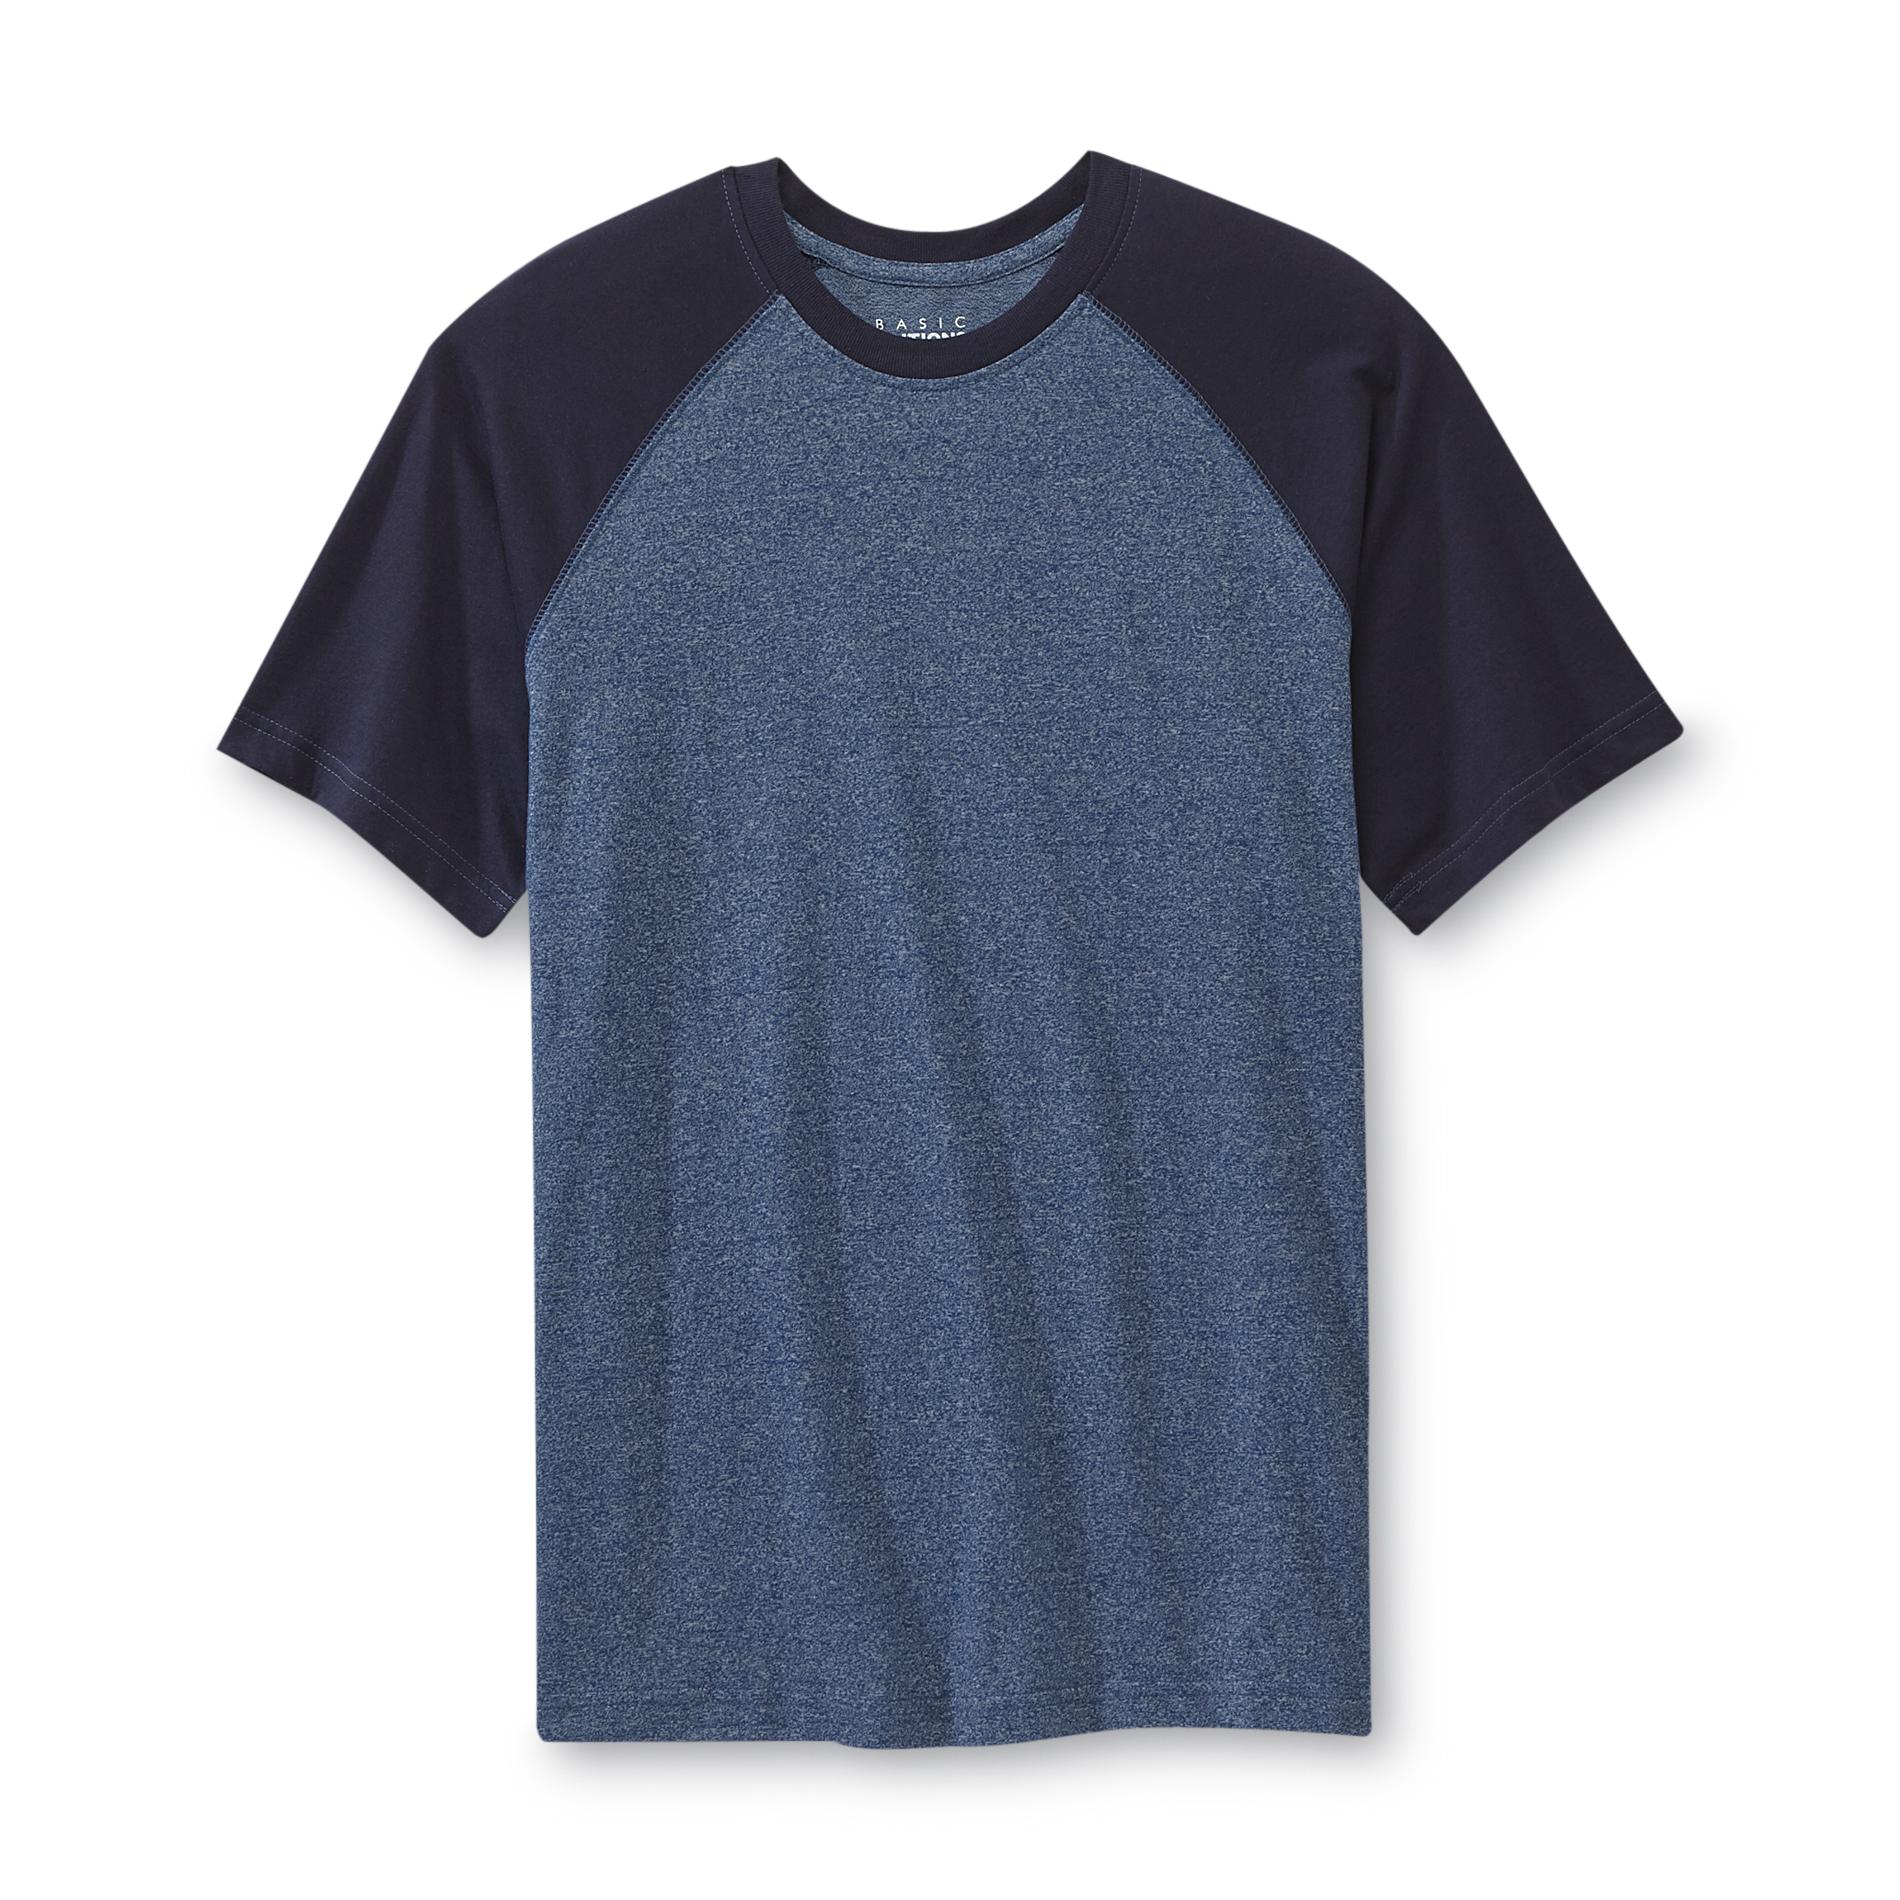 Basic Editions Men's Ringer T-Shirt